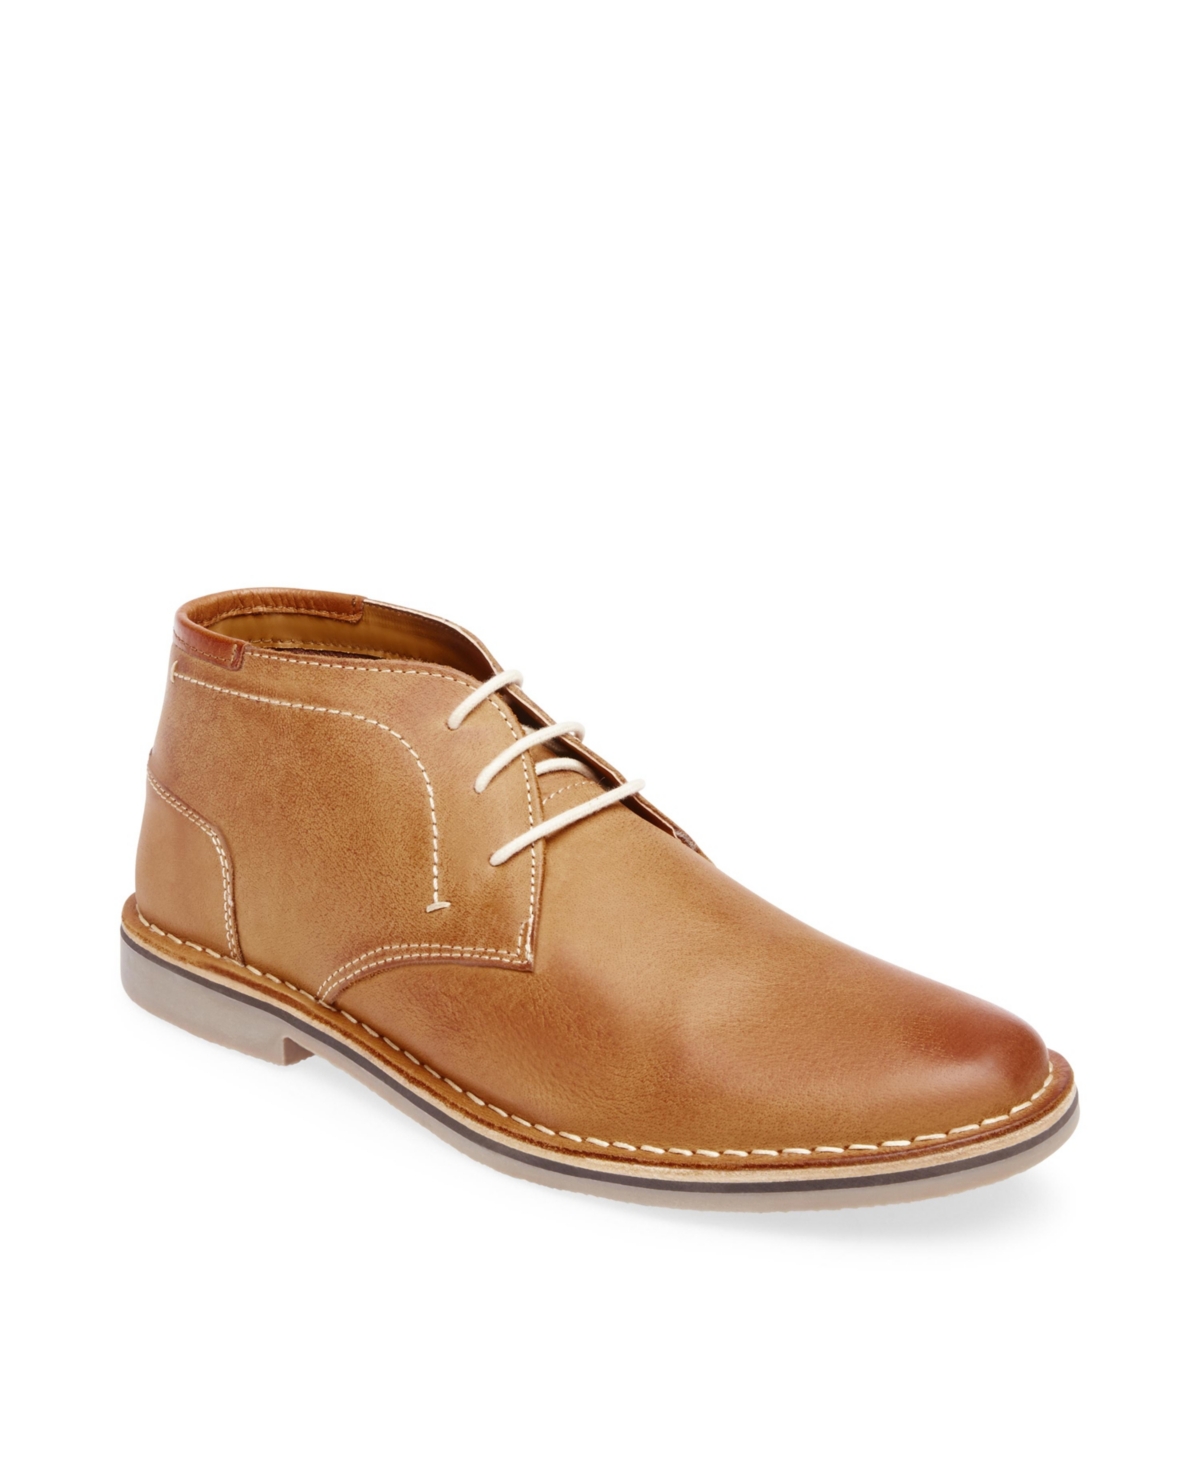 Men's Hestonn Chukka Boots - Tan Leather